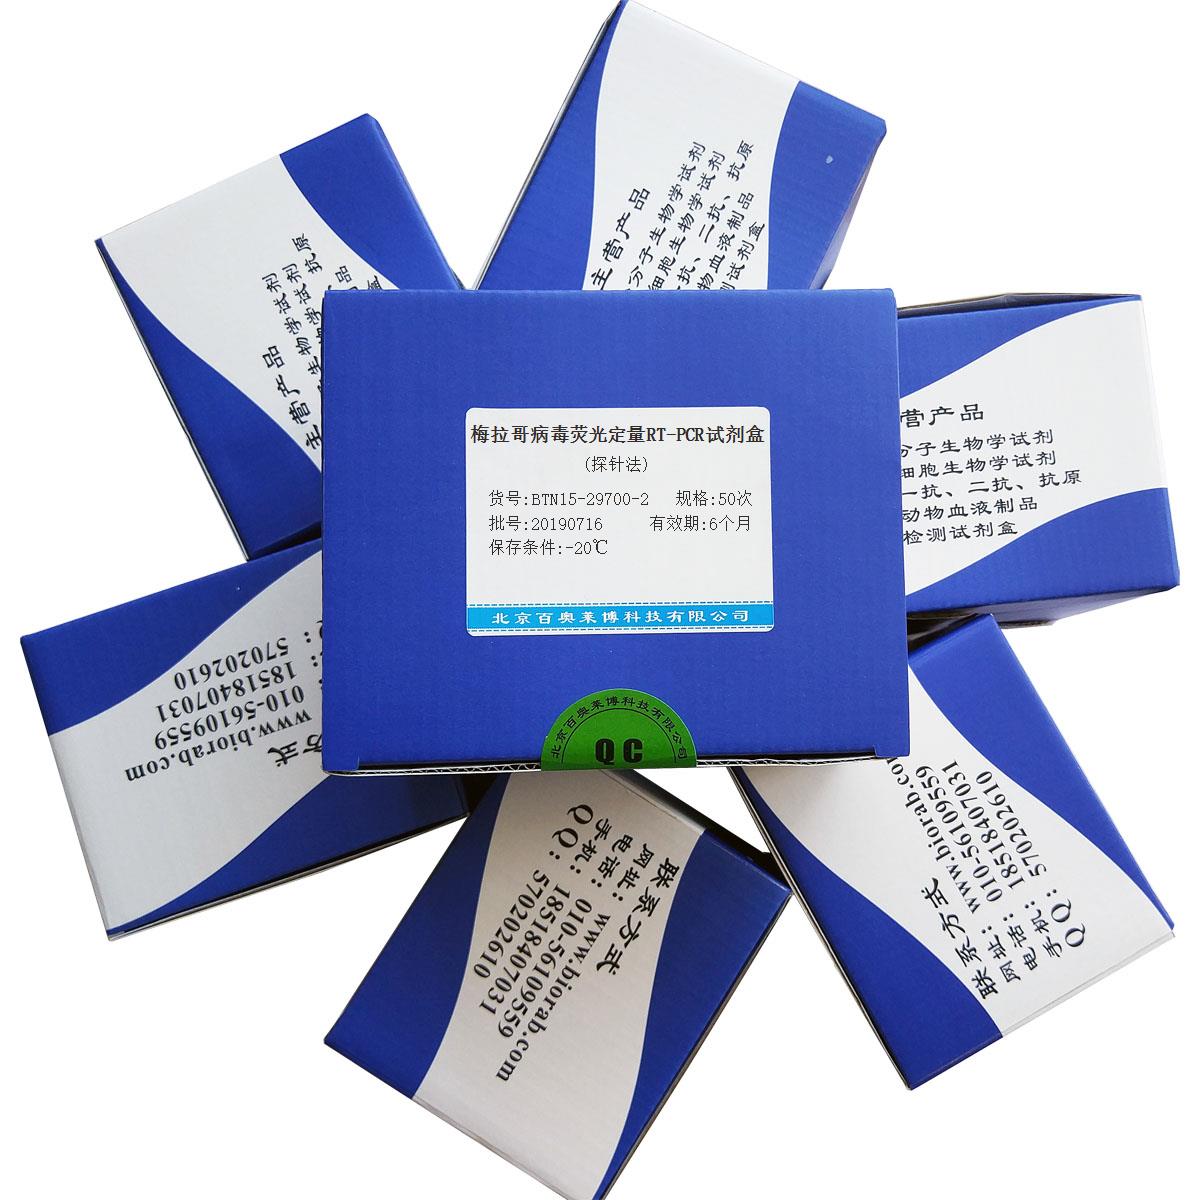 梅拉哥病毒荧光定量RT-PCR试剂盒(探针法)